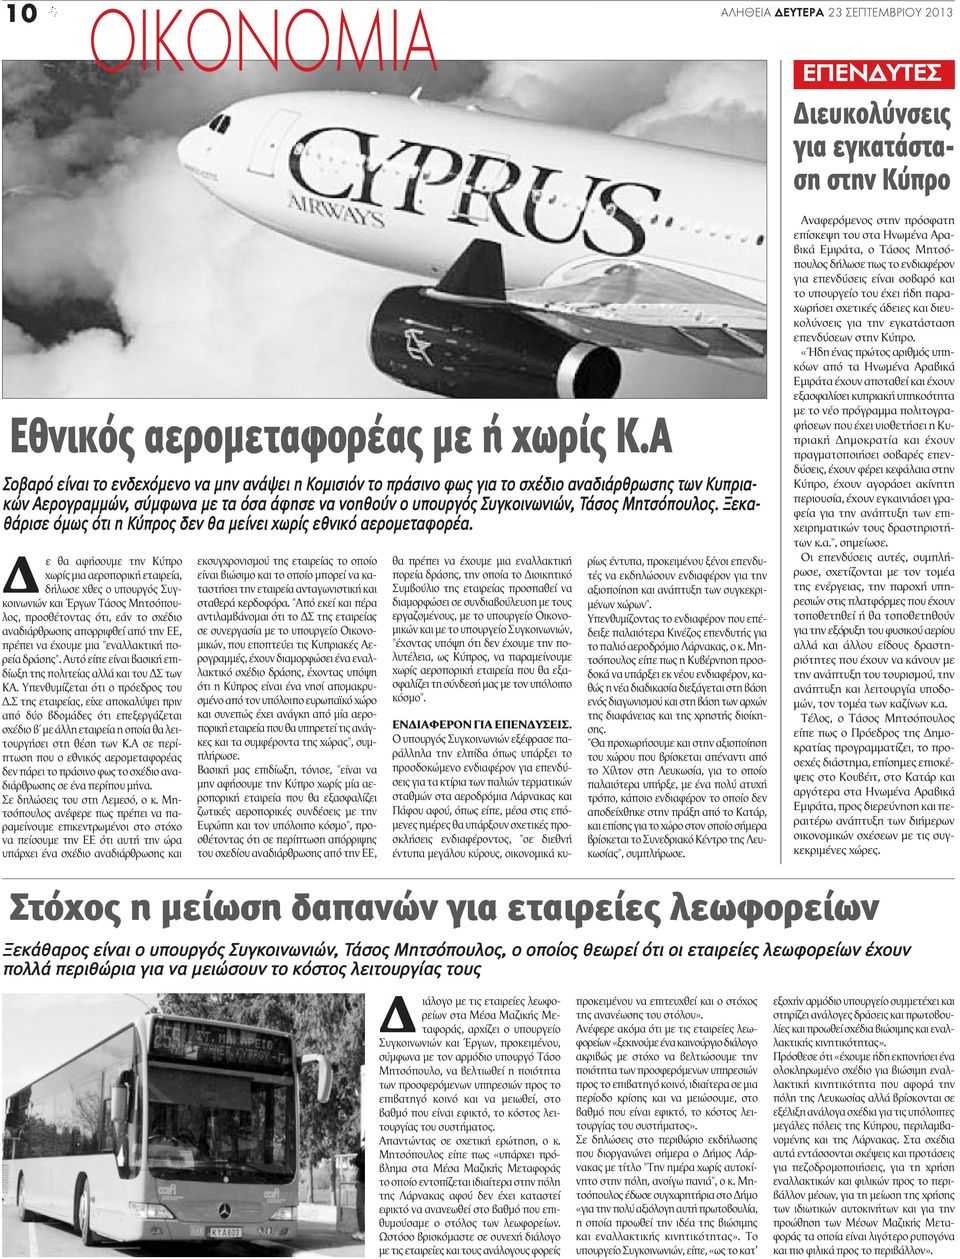 Μητσόπουλος. Ξεκαθάρισε όμως ότι η Κύπρος δεν θα μείνει χωρίς εθνικό αερομεταφορέα.